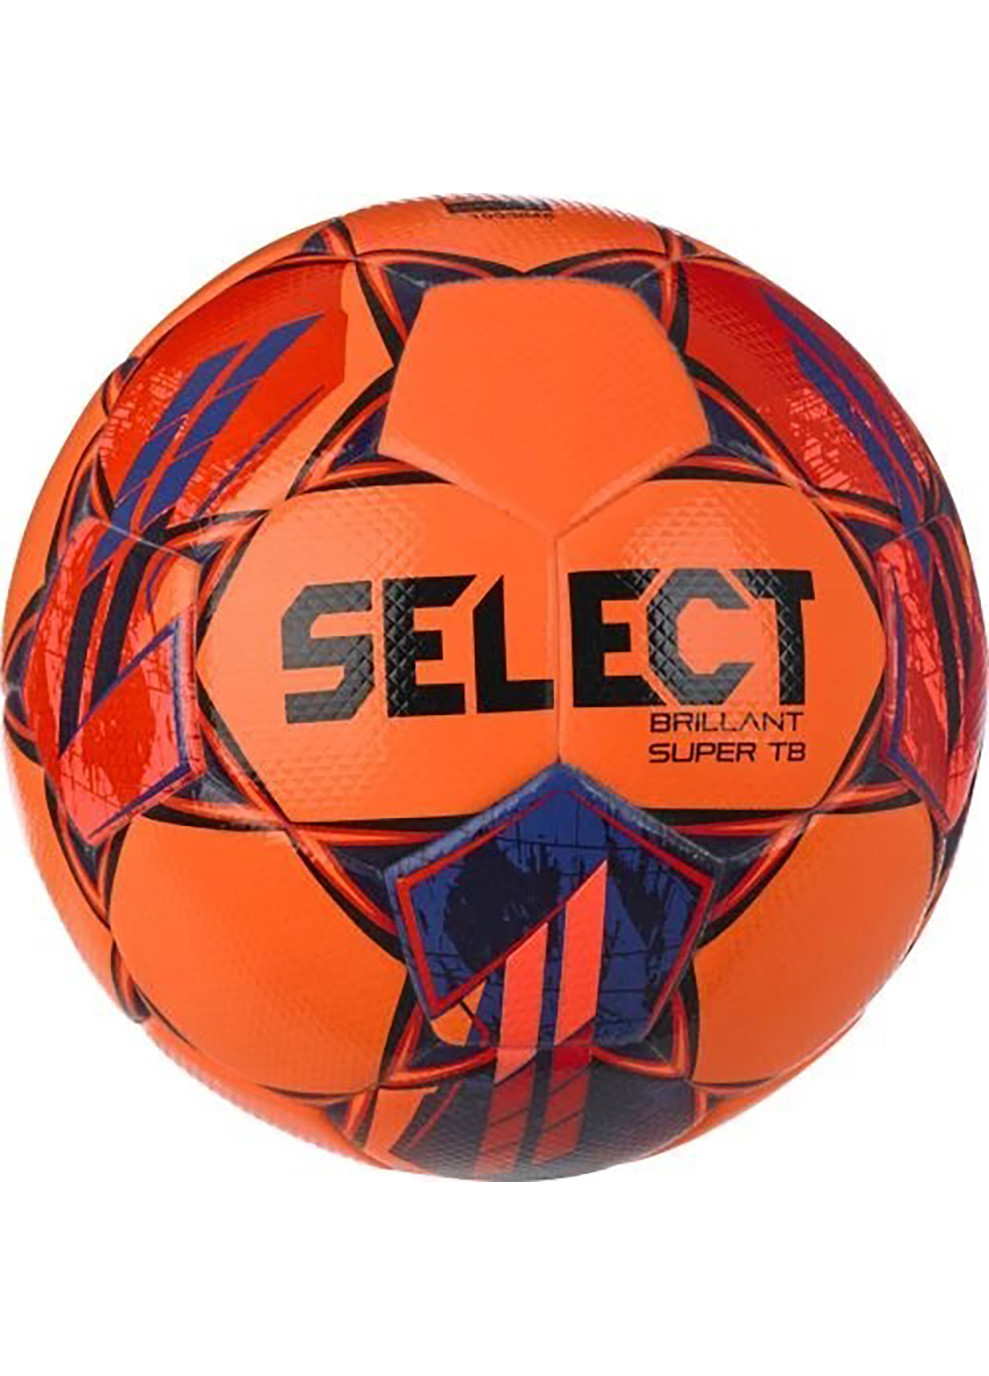 М'яч футбольний BRILLANT SUPER FIFA TB v23 помаранчевий, червоний Уні 5 Select (262599184)